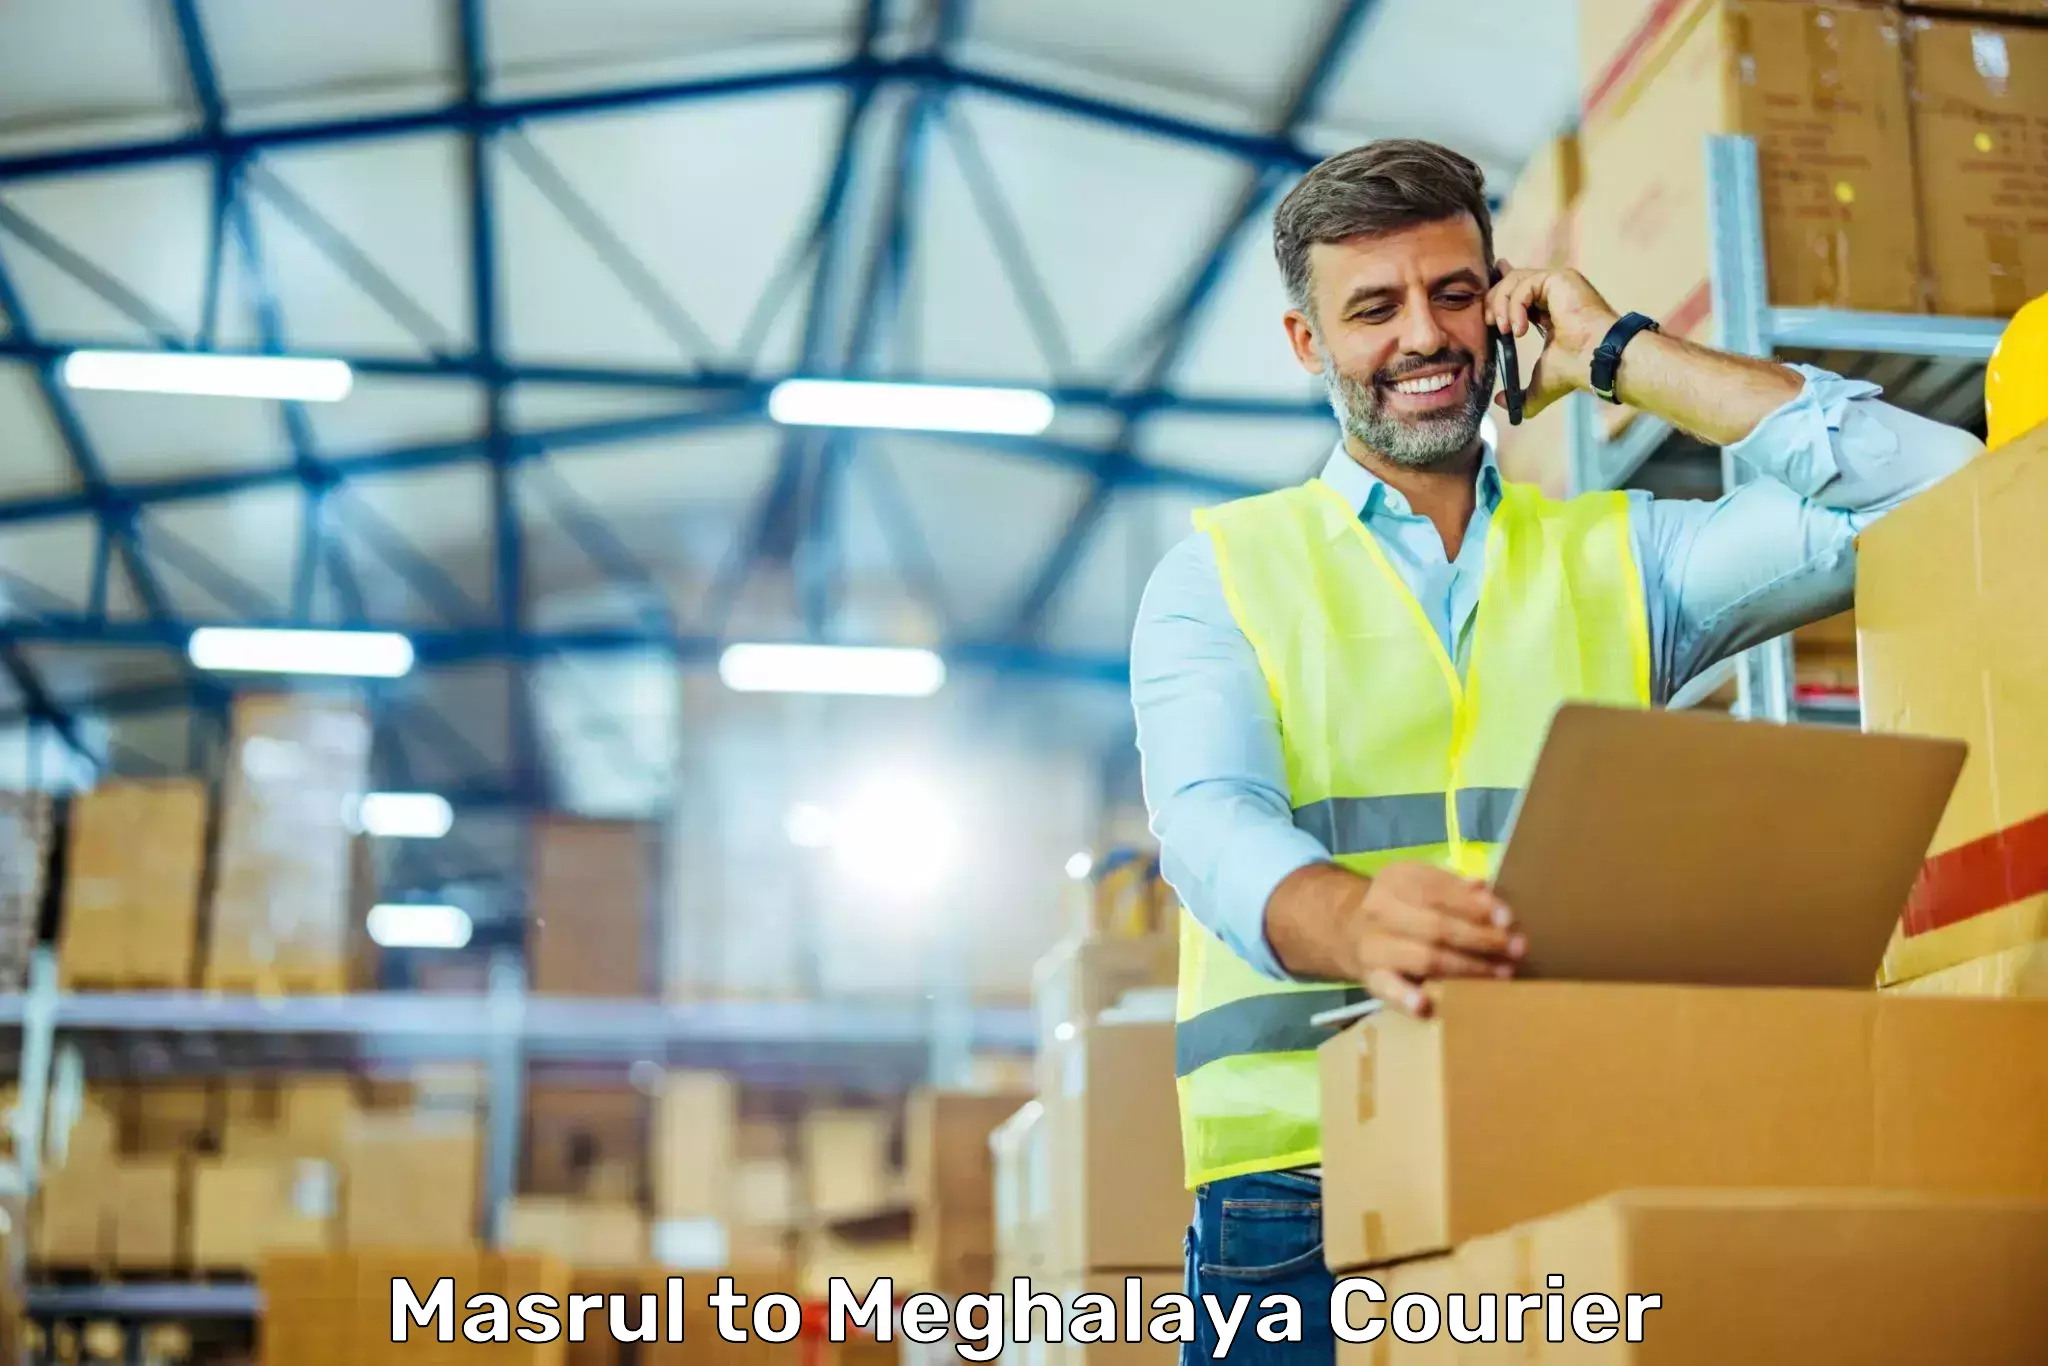 Express logistics service Masrul to Meghalaya